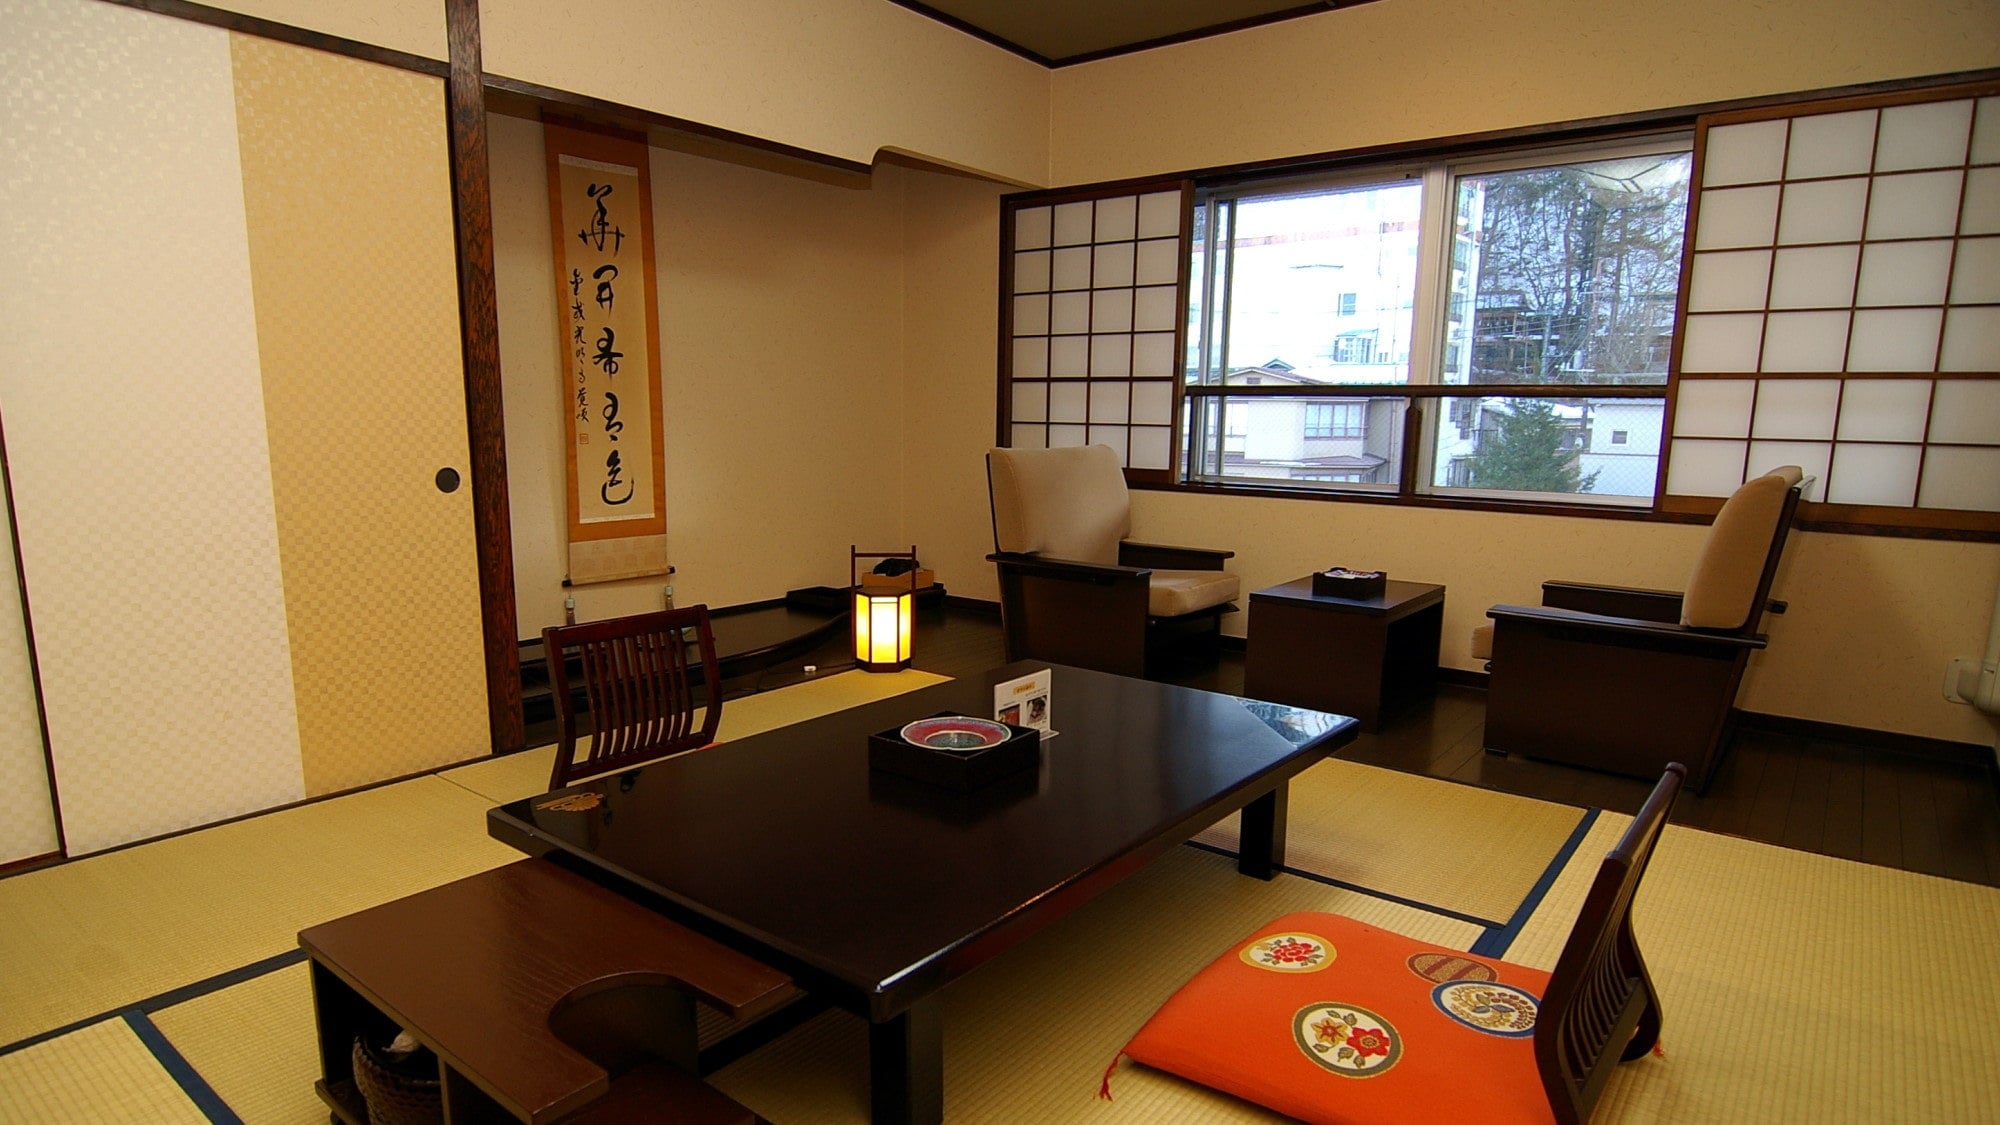 ห้องสไตล์ญี่ปุ่น 8 เสื่อทาทามิ ภาพ photo